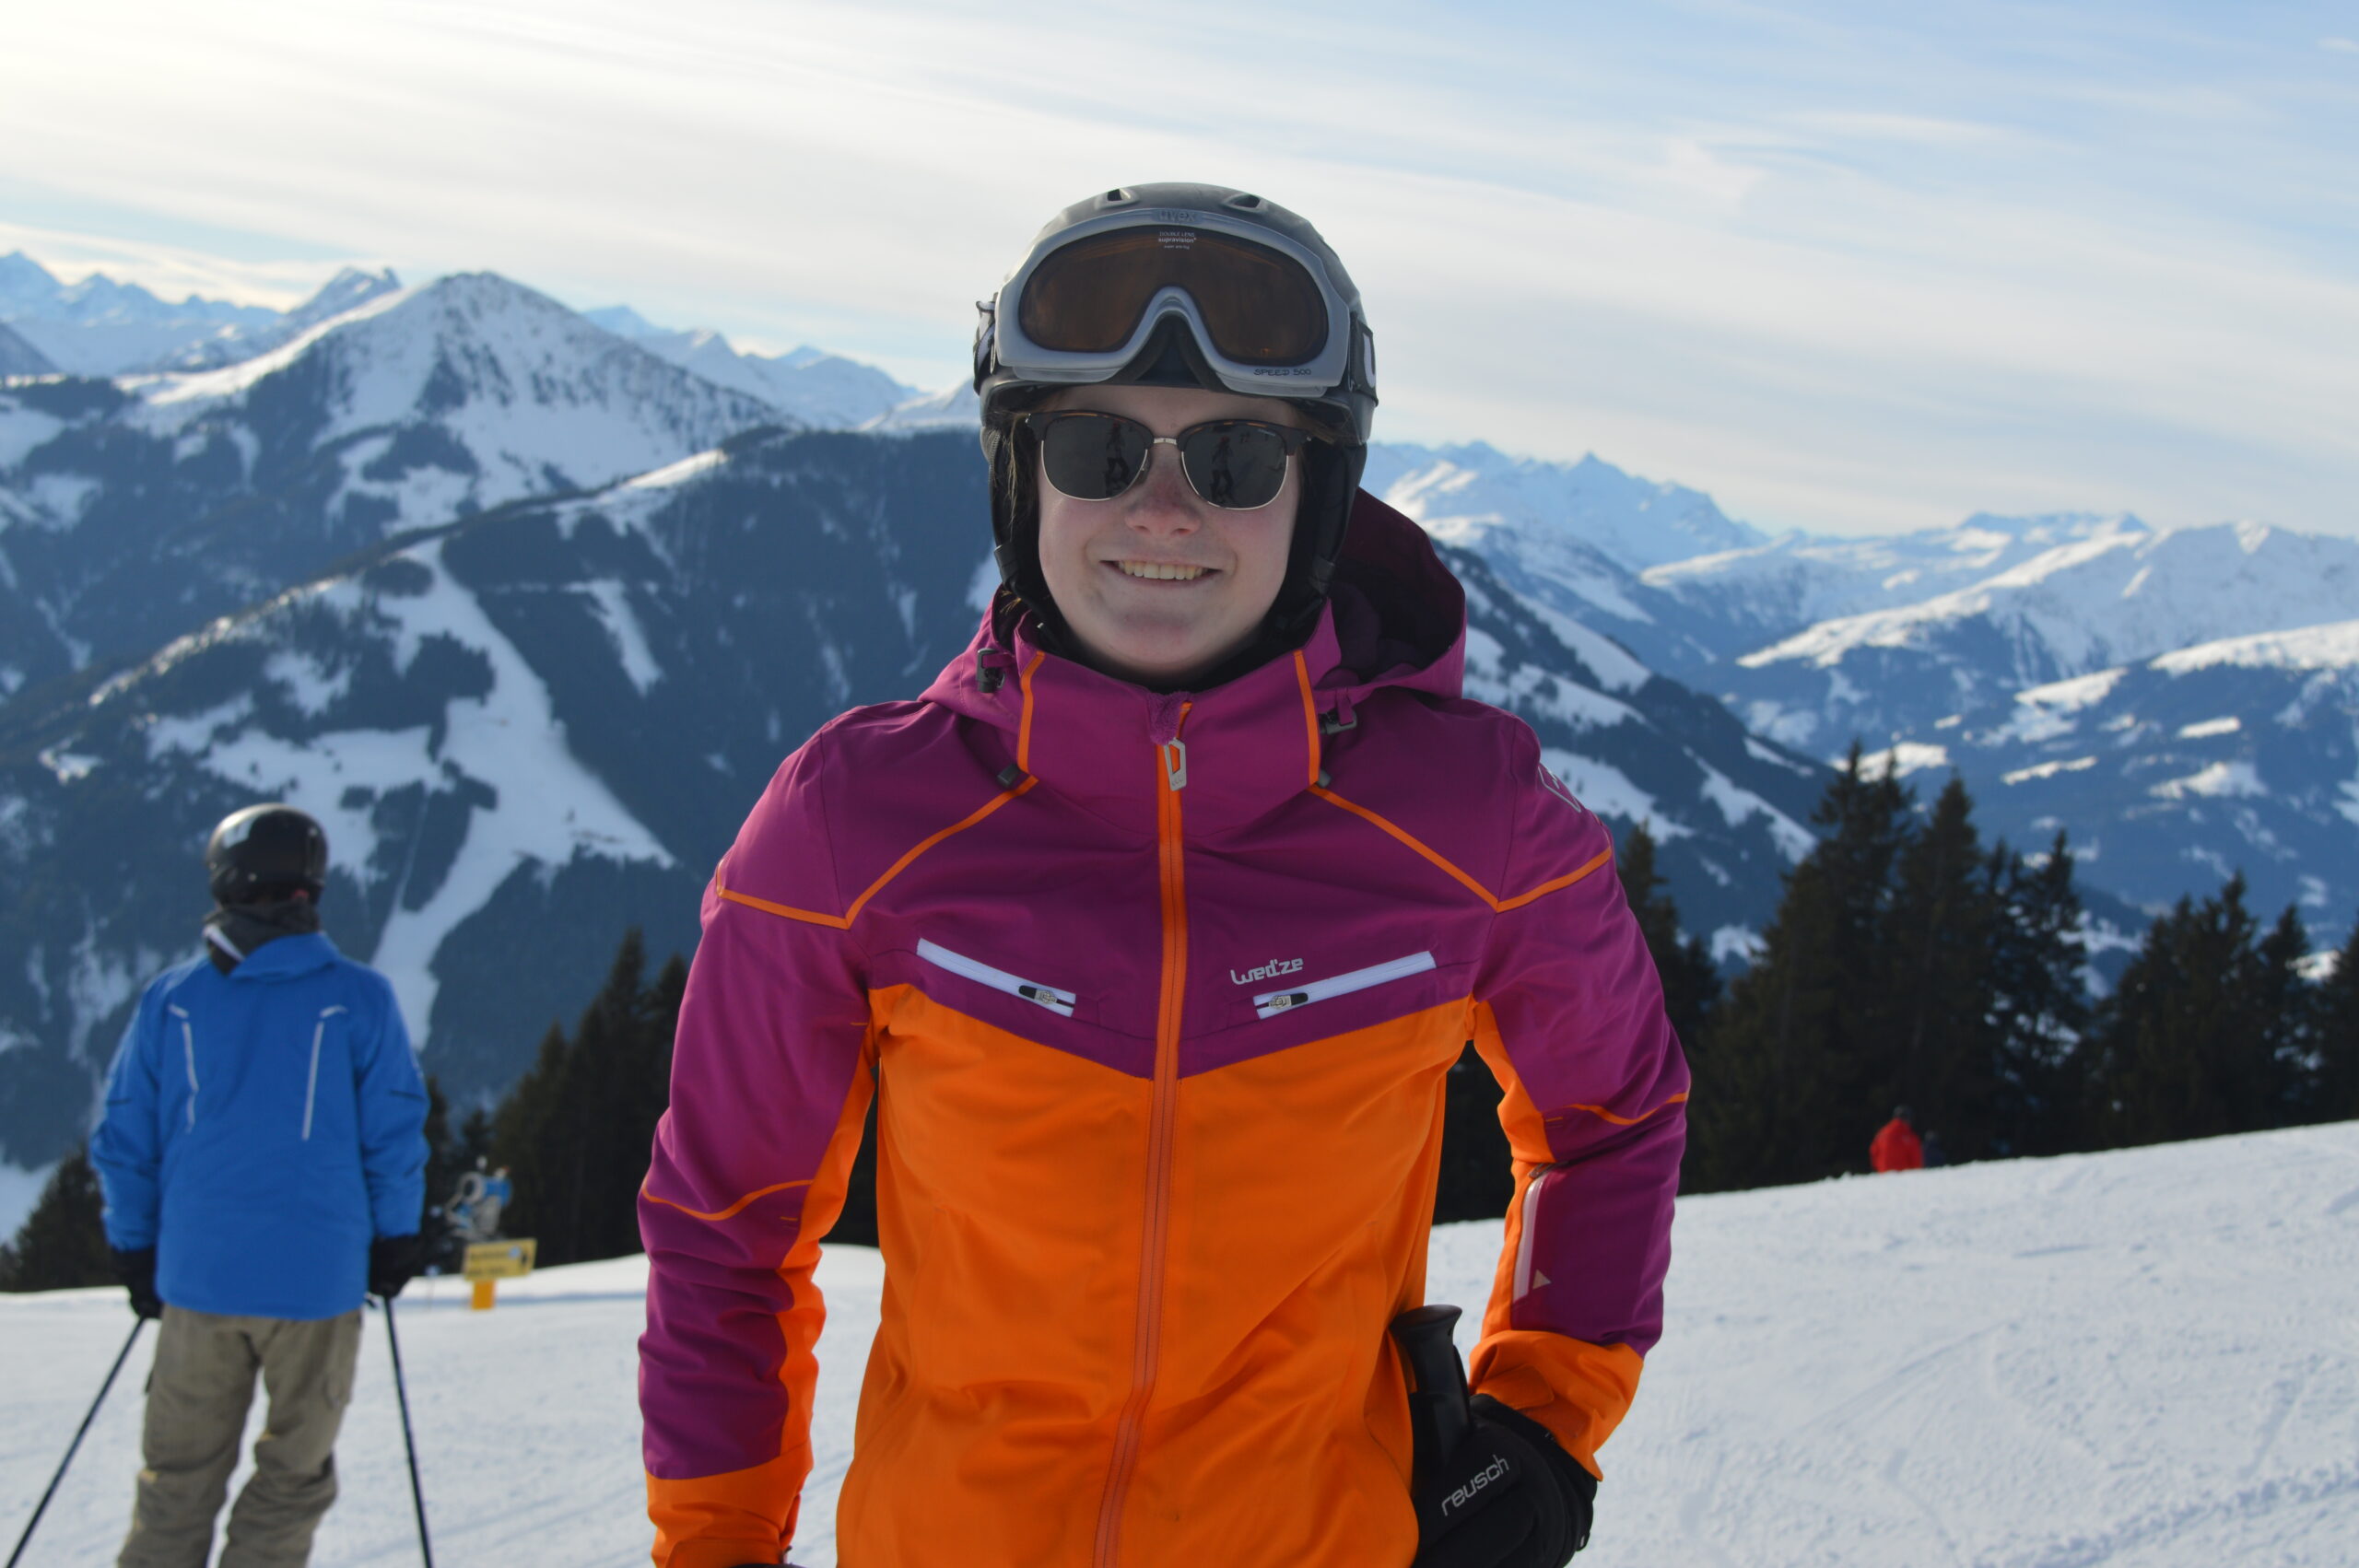 Mijn ervaring: Skiles geven als skileraar in Oostenrijk